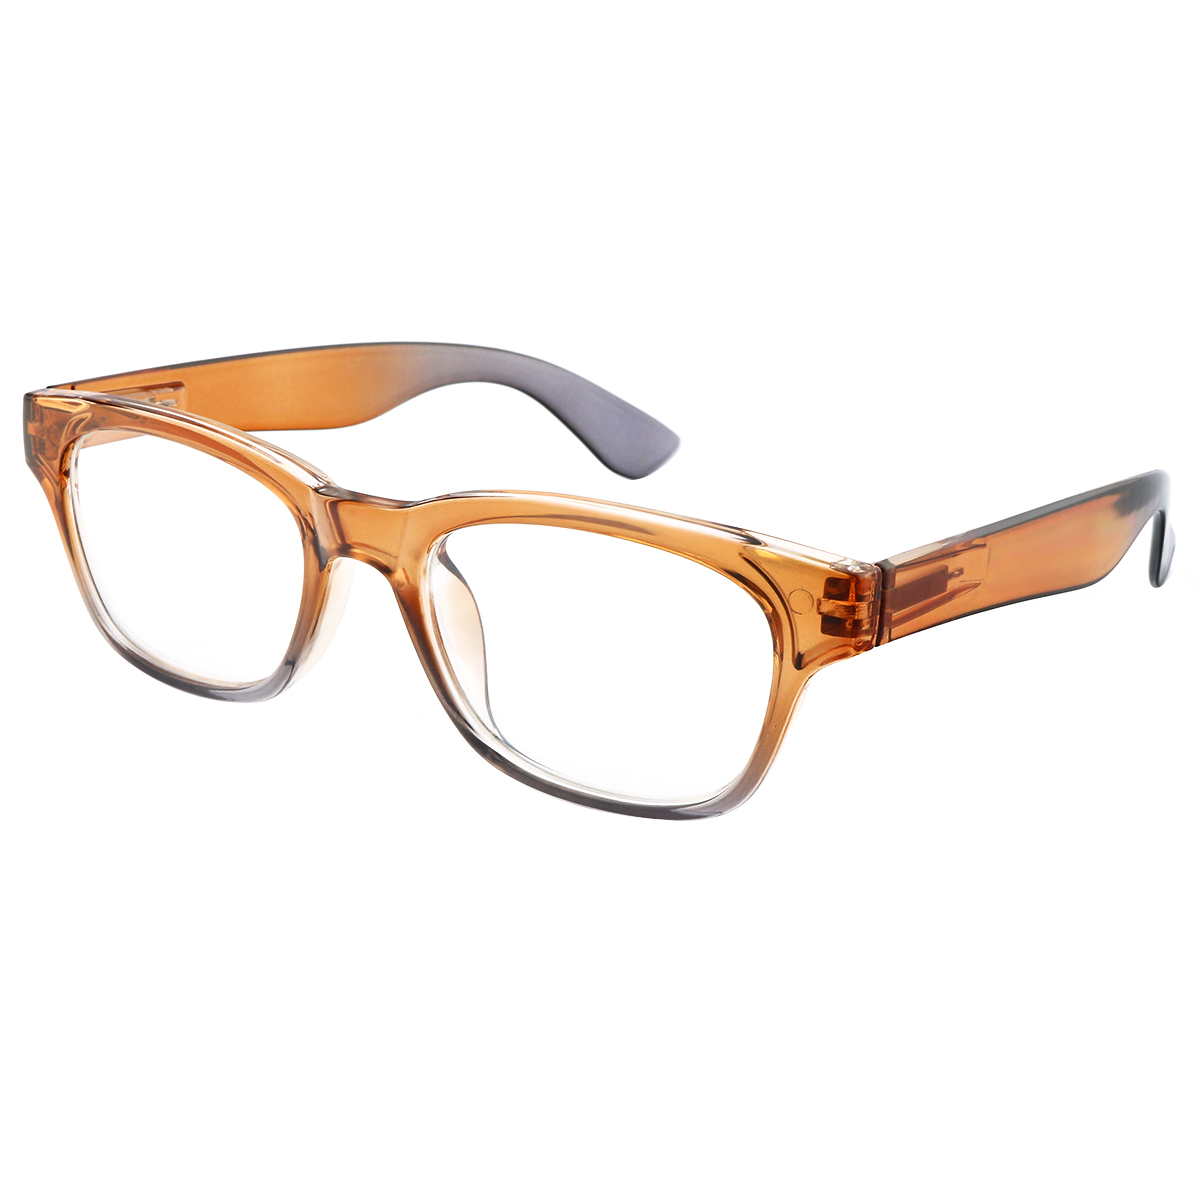 Amplify - Square Orange-Gray Reading Glasses for Men & Women